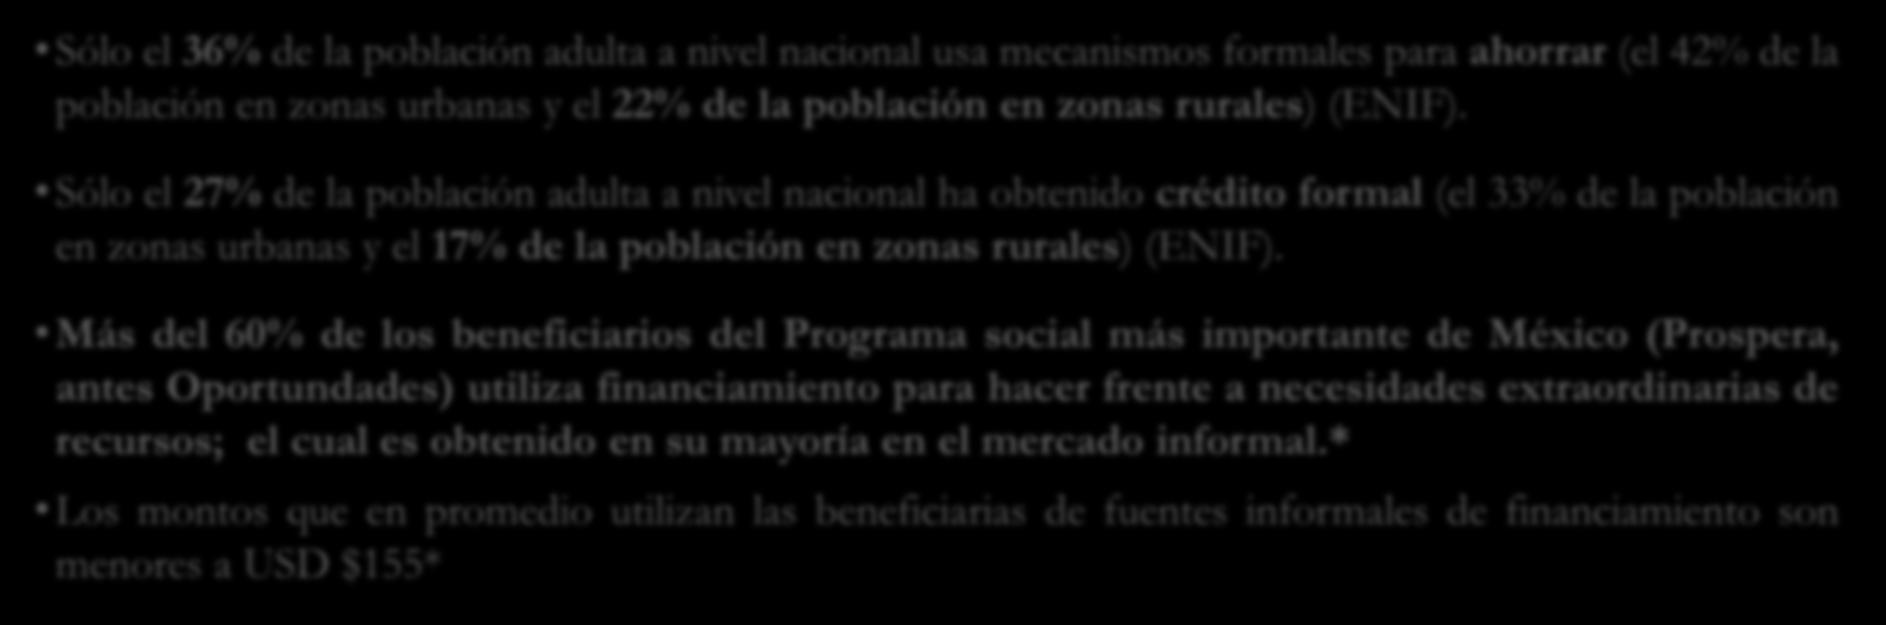 El Problema: la exclusión financiera Un alto porcentaje de la población en México utiliza mecanismos informales para ahorrar y obtener crédito a un costo mayor que el relacionado a instrumentos